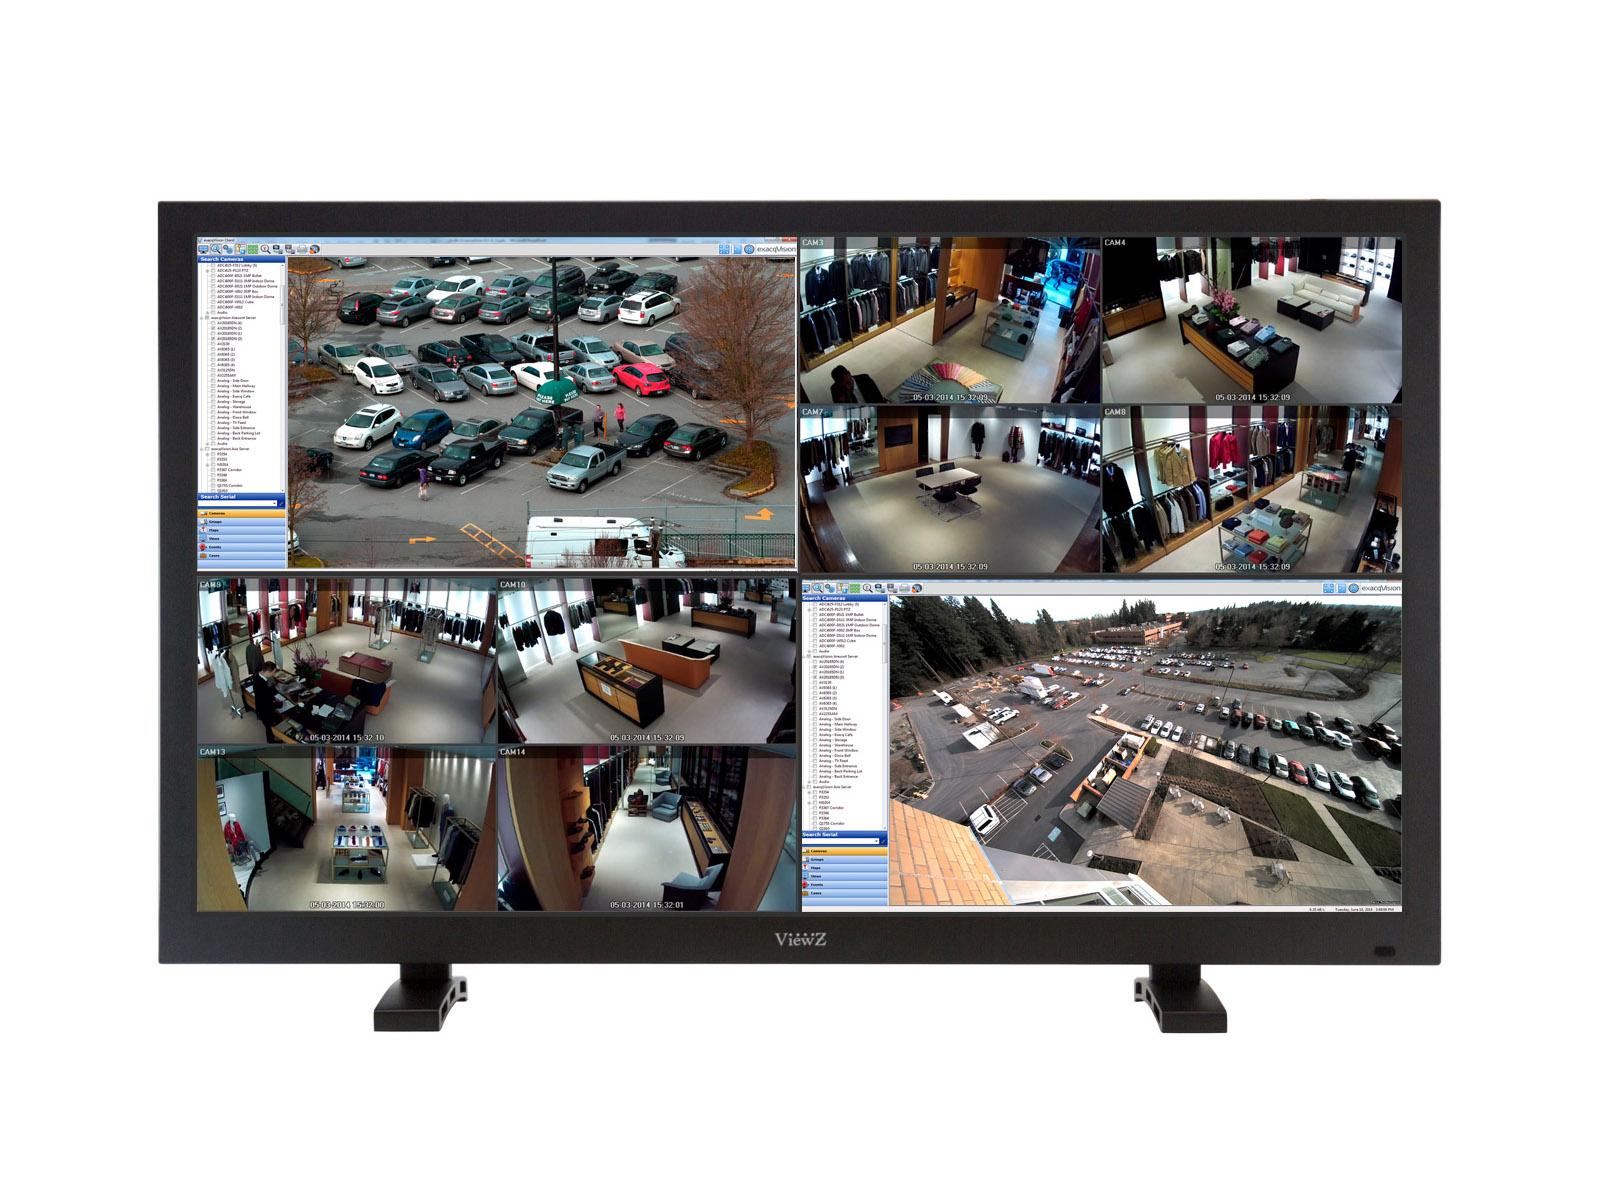 ViewZ VZ-55UHD 55 inch 3840x2160 Display Port/HDMI 4K UHD/Quad View LED Monitor